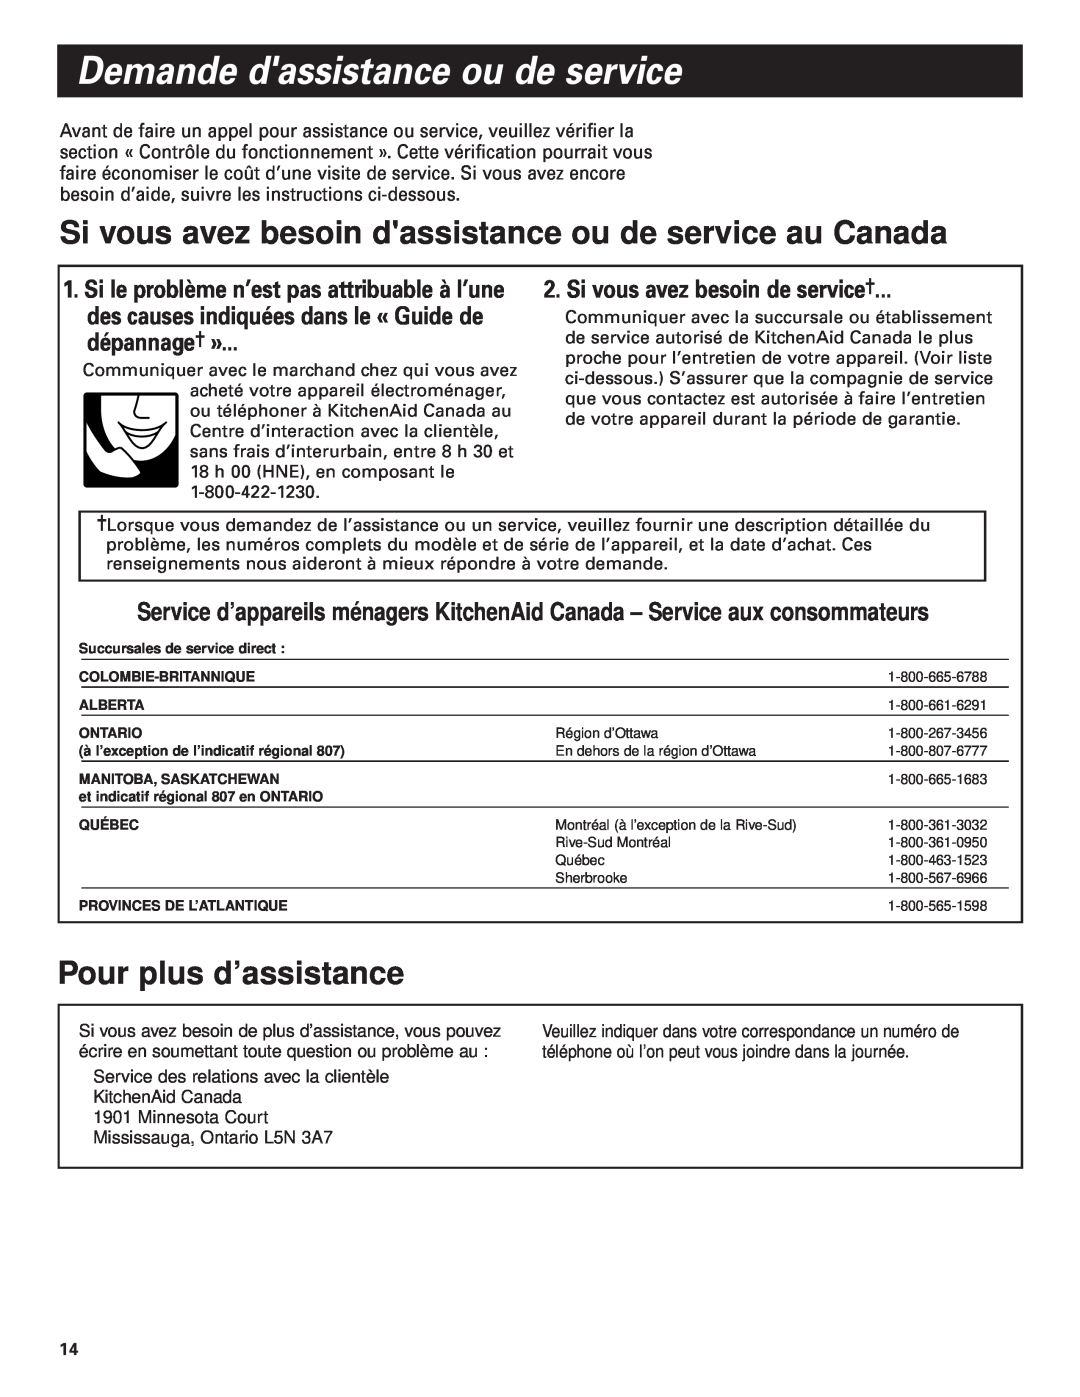 KitchenAid Pro Line Series Si vous avez besoin dassistance ou de service au Canada, Pour plus d’assistance, dépannage» 